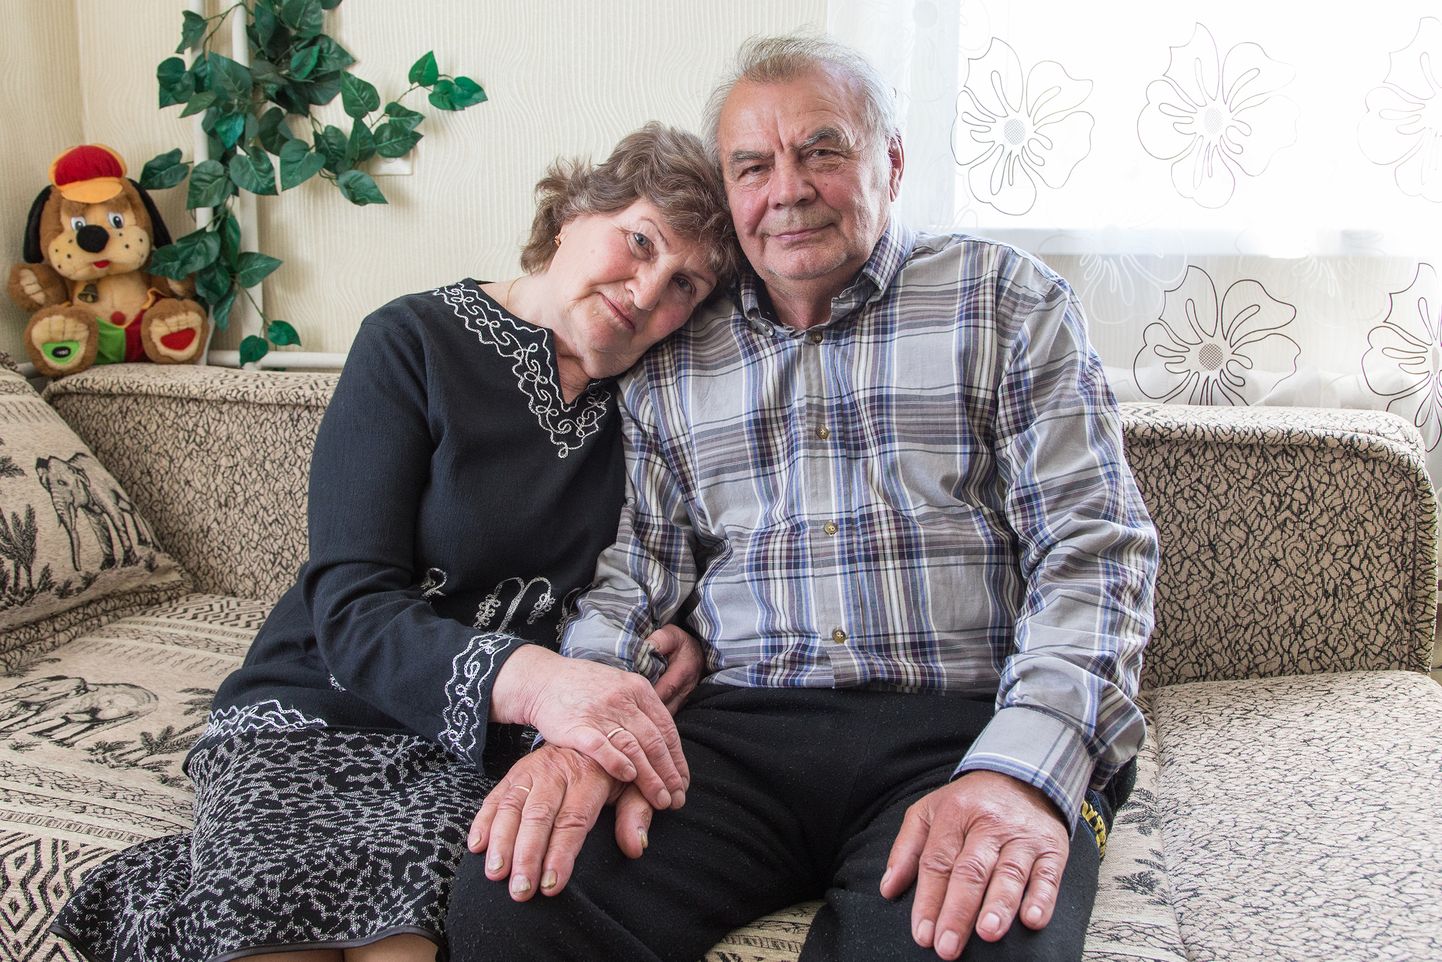 Elena ja Vladimir Polushchenkov elasid samas kaevurite ühiselamus Jõhvis, aga tuttavaks saadi kaevurite õhtul. Kui abielluti, oli Elena 21- ja Vladimir 30aastane. Nemad tähistasid mullu kuldpulmi.